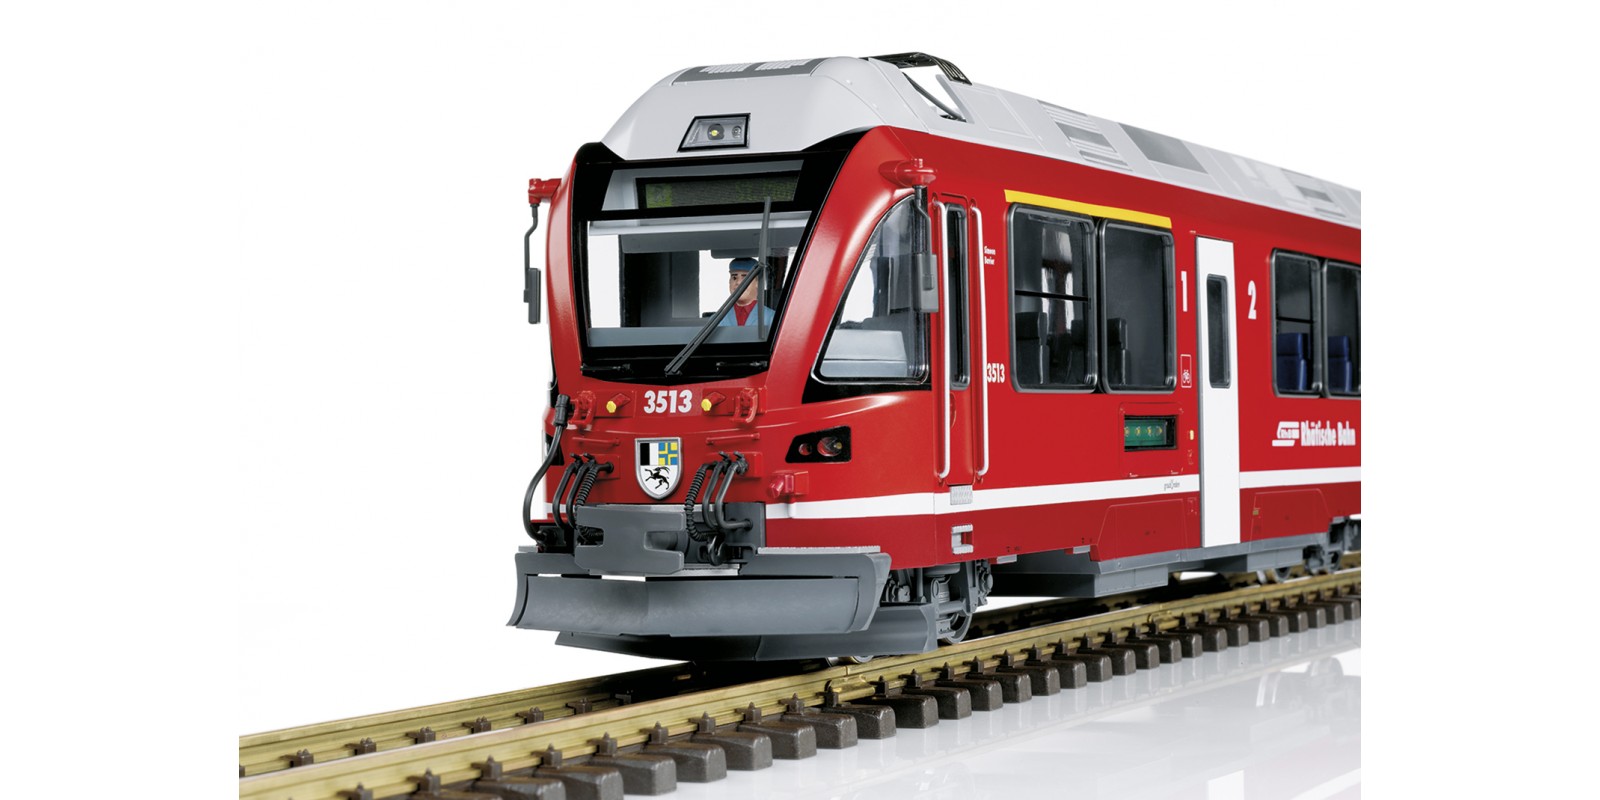 L22225 RhB Class ABe 8/12 "Allegra" Powered Rail Car Train